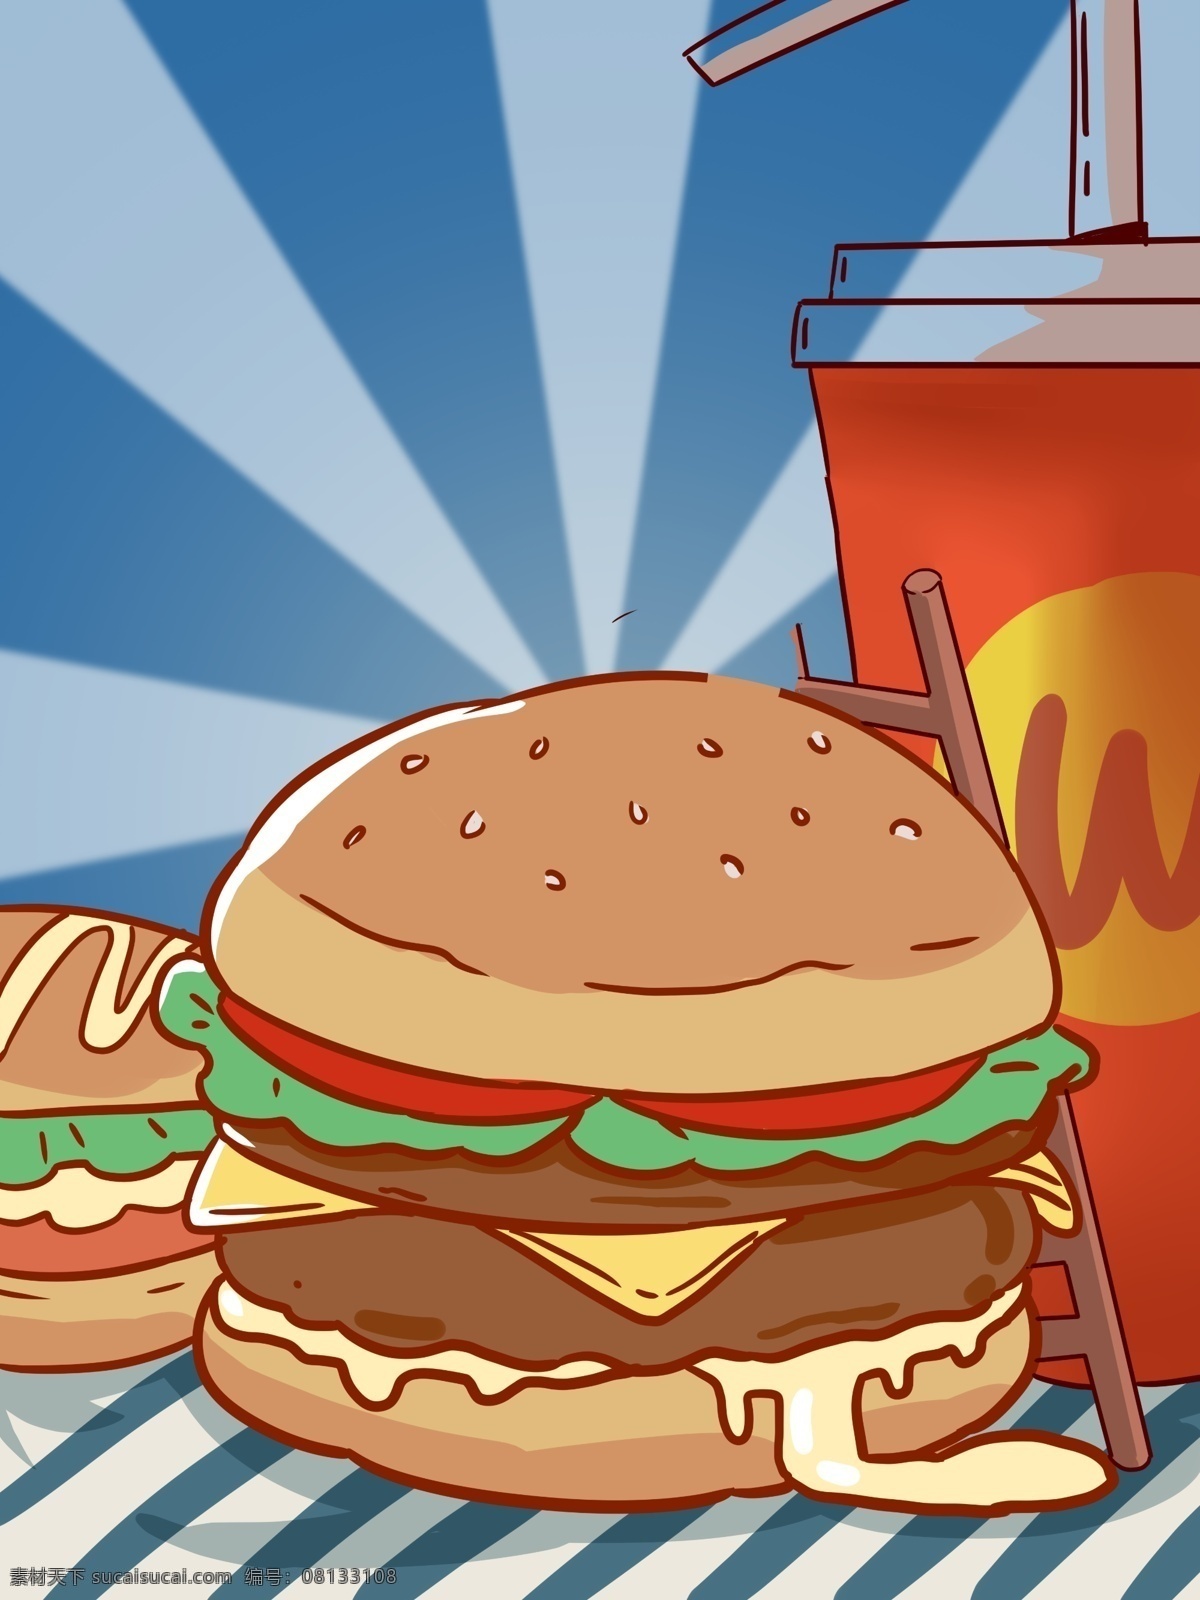 蓝色 清新 手绘 美味 汉堡 插画 背景 蓝色背景 清新背景 手绘背景 卡通背景 可乐 通用背景 美味背景 汉堡背景 放射背景